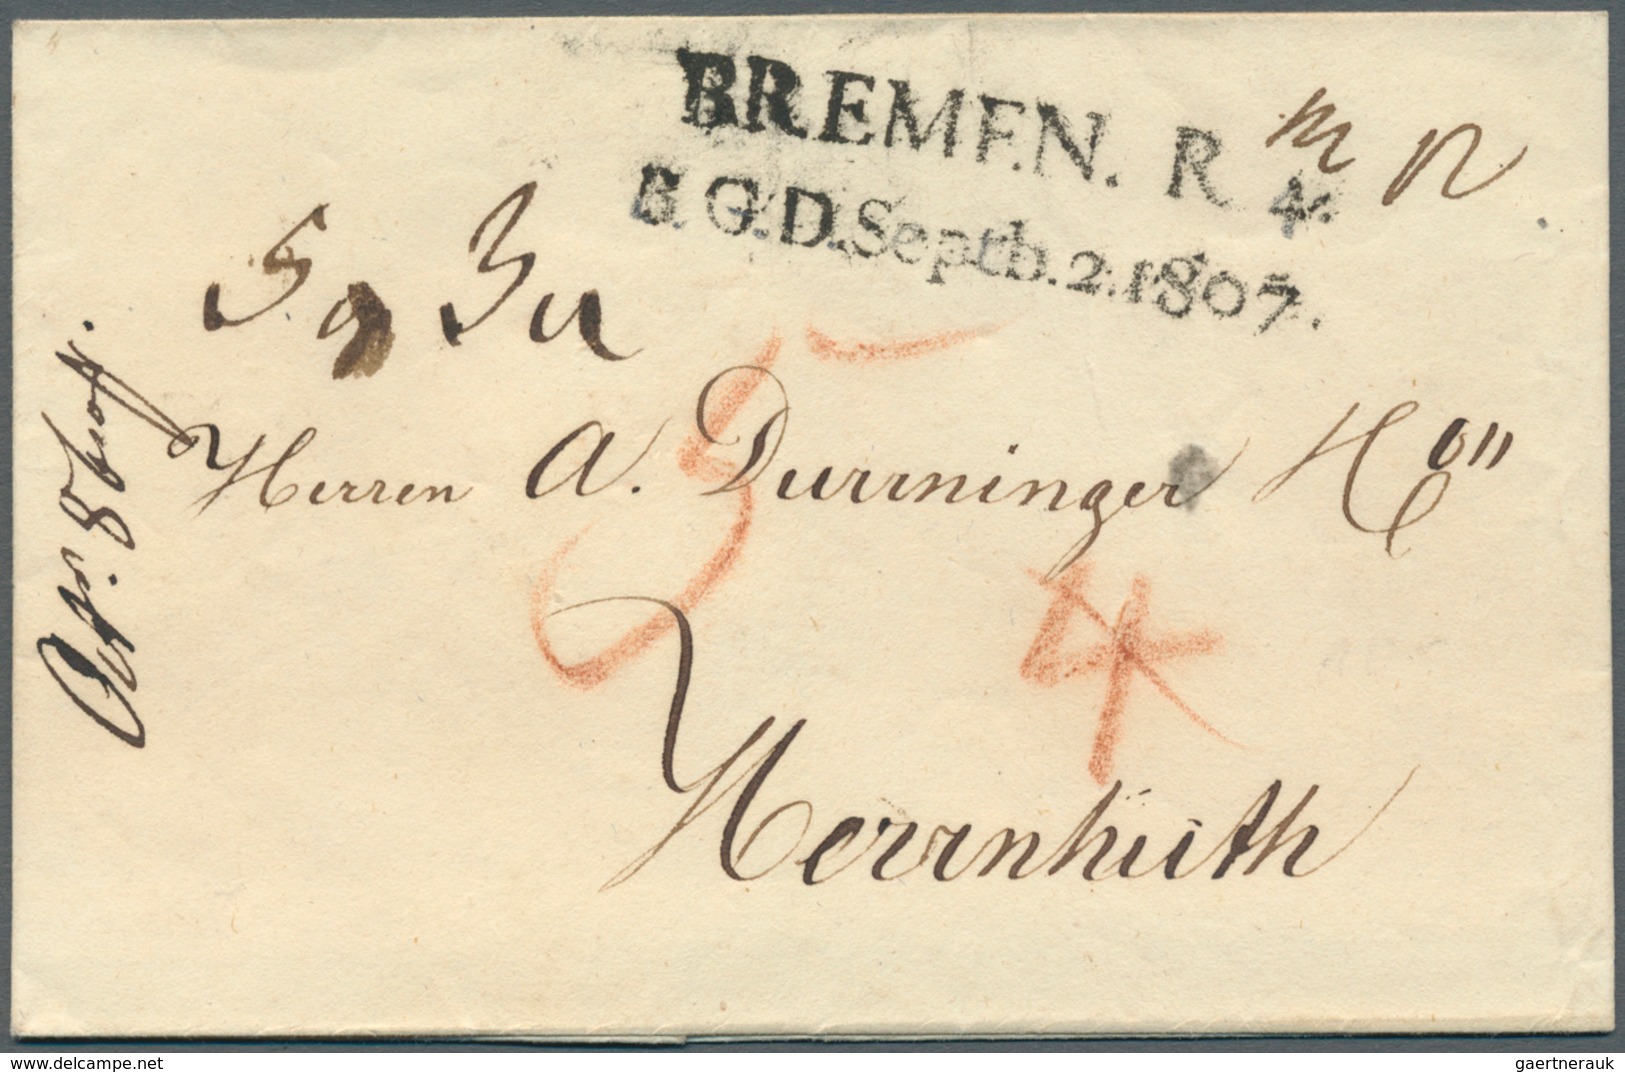 Bremen - Vorphilatelie: 1767/1875, umfangreiche Stempel-Sammlung der verschiedenen Postanstalten in